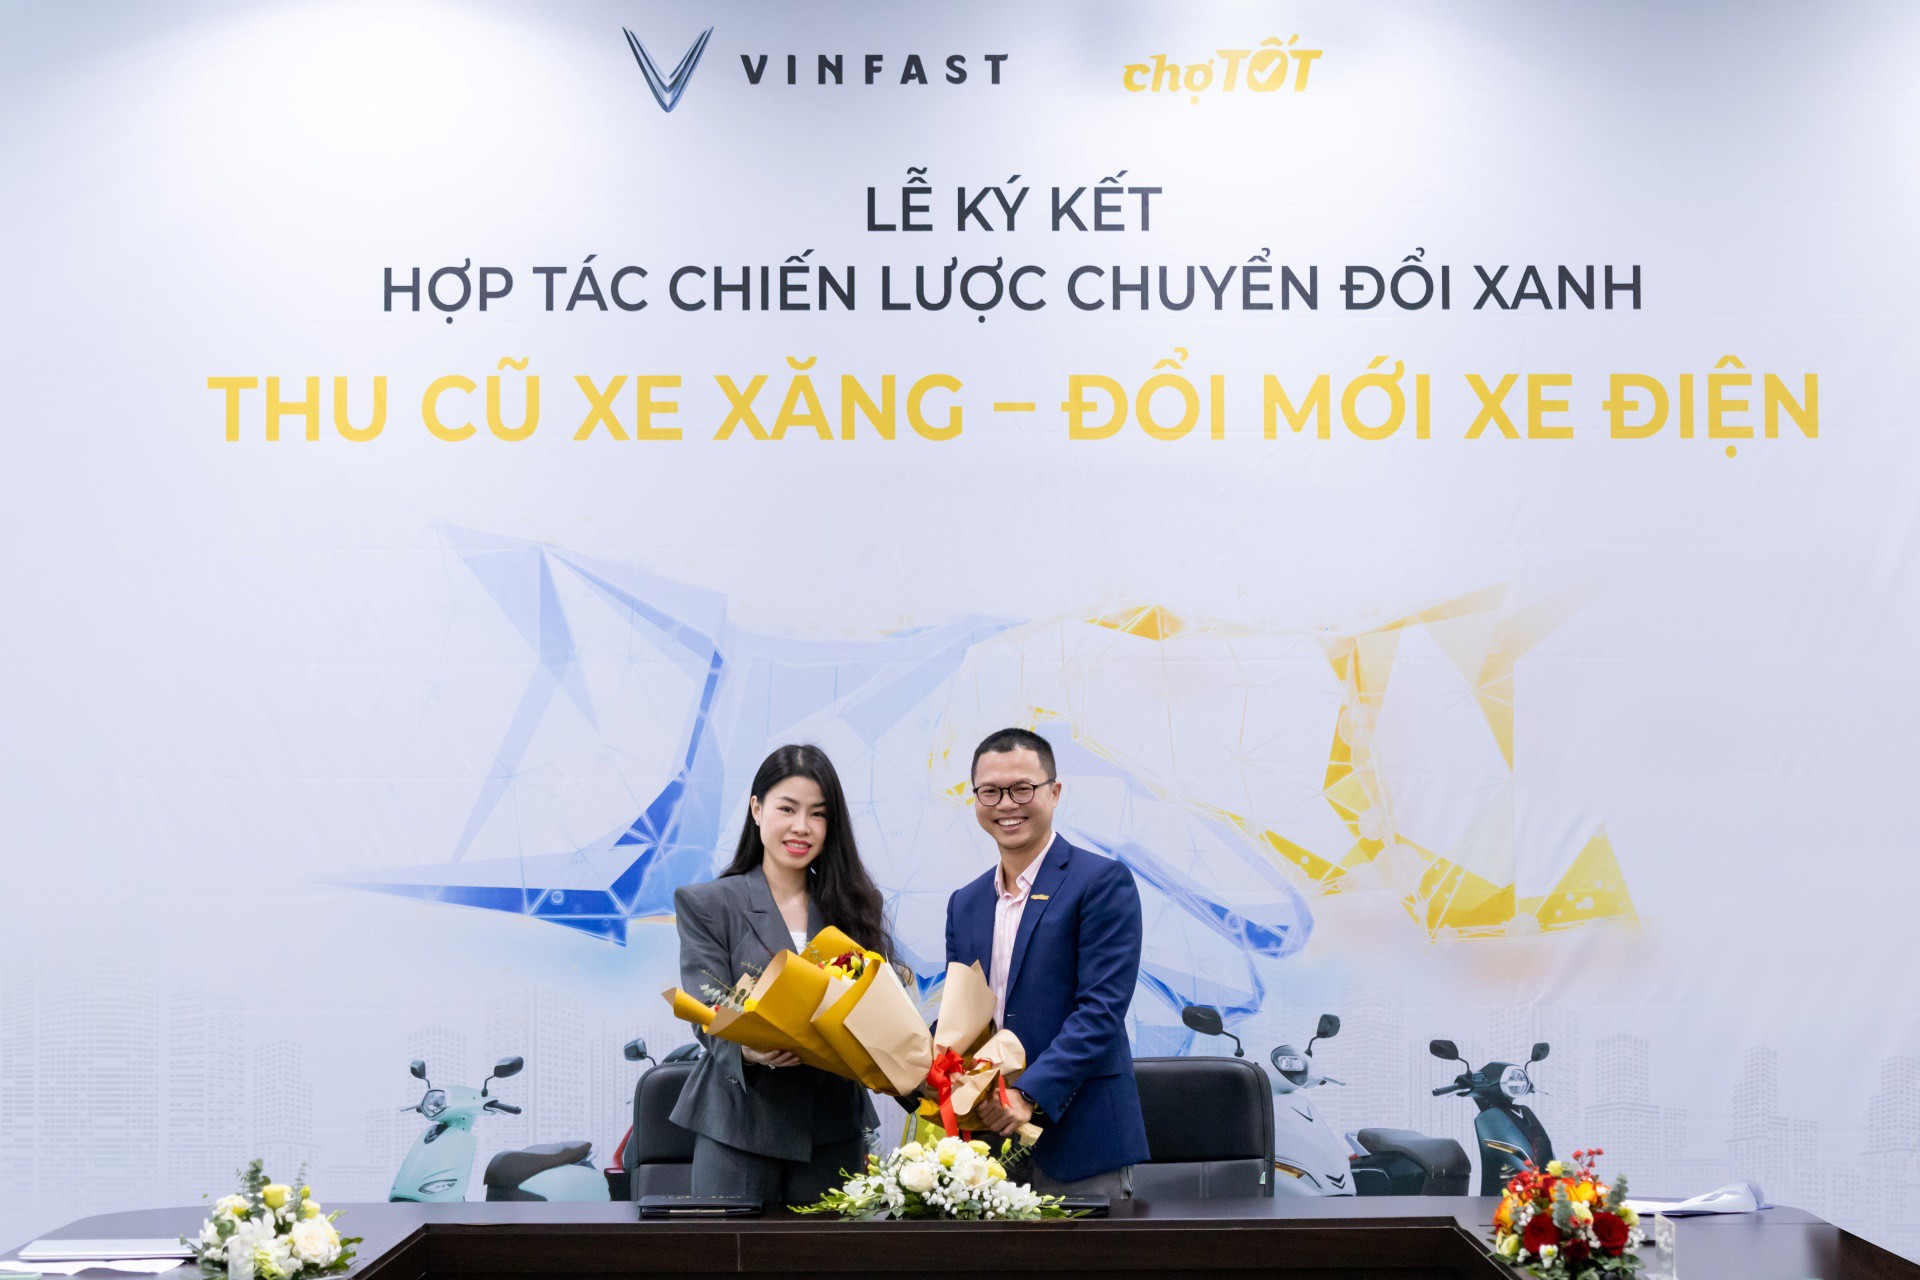 Bà Dương Thị Thu Trang - Tổng giám đốc VinFast Thị trường Việt Nam và ông Nguyễn Trọng Tấn - Tổng giám đốc Chợ Tốt tại lễ ký kết&nbsp;hợp tác